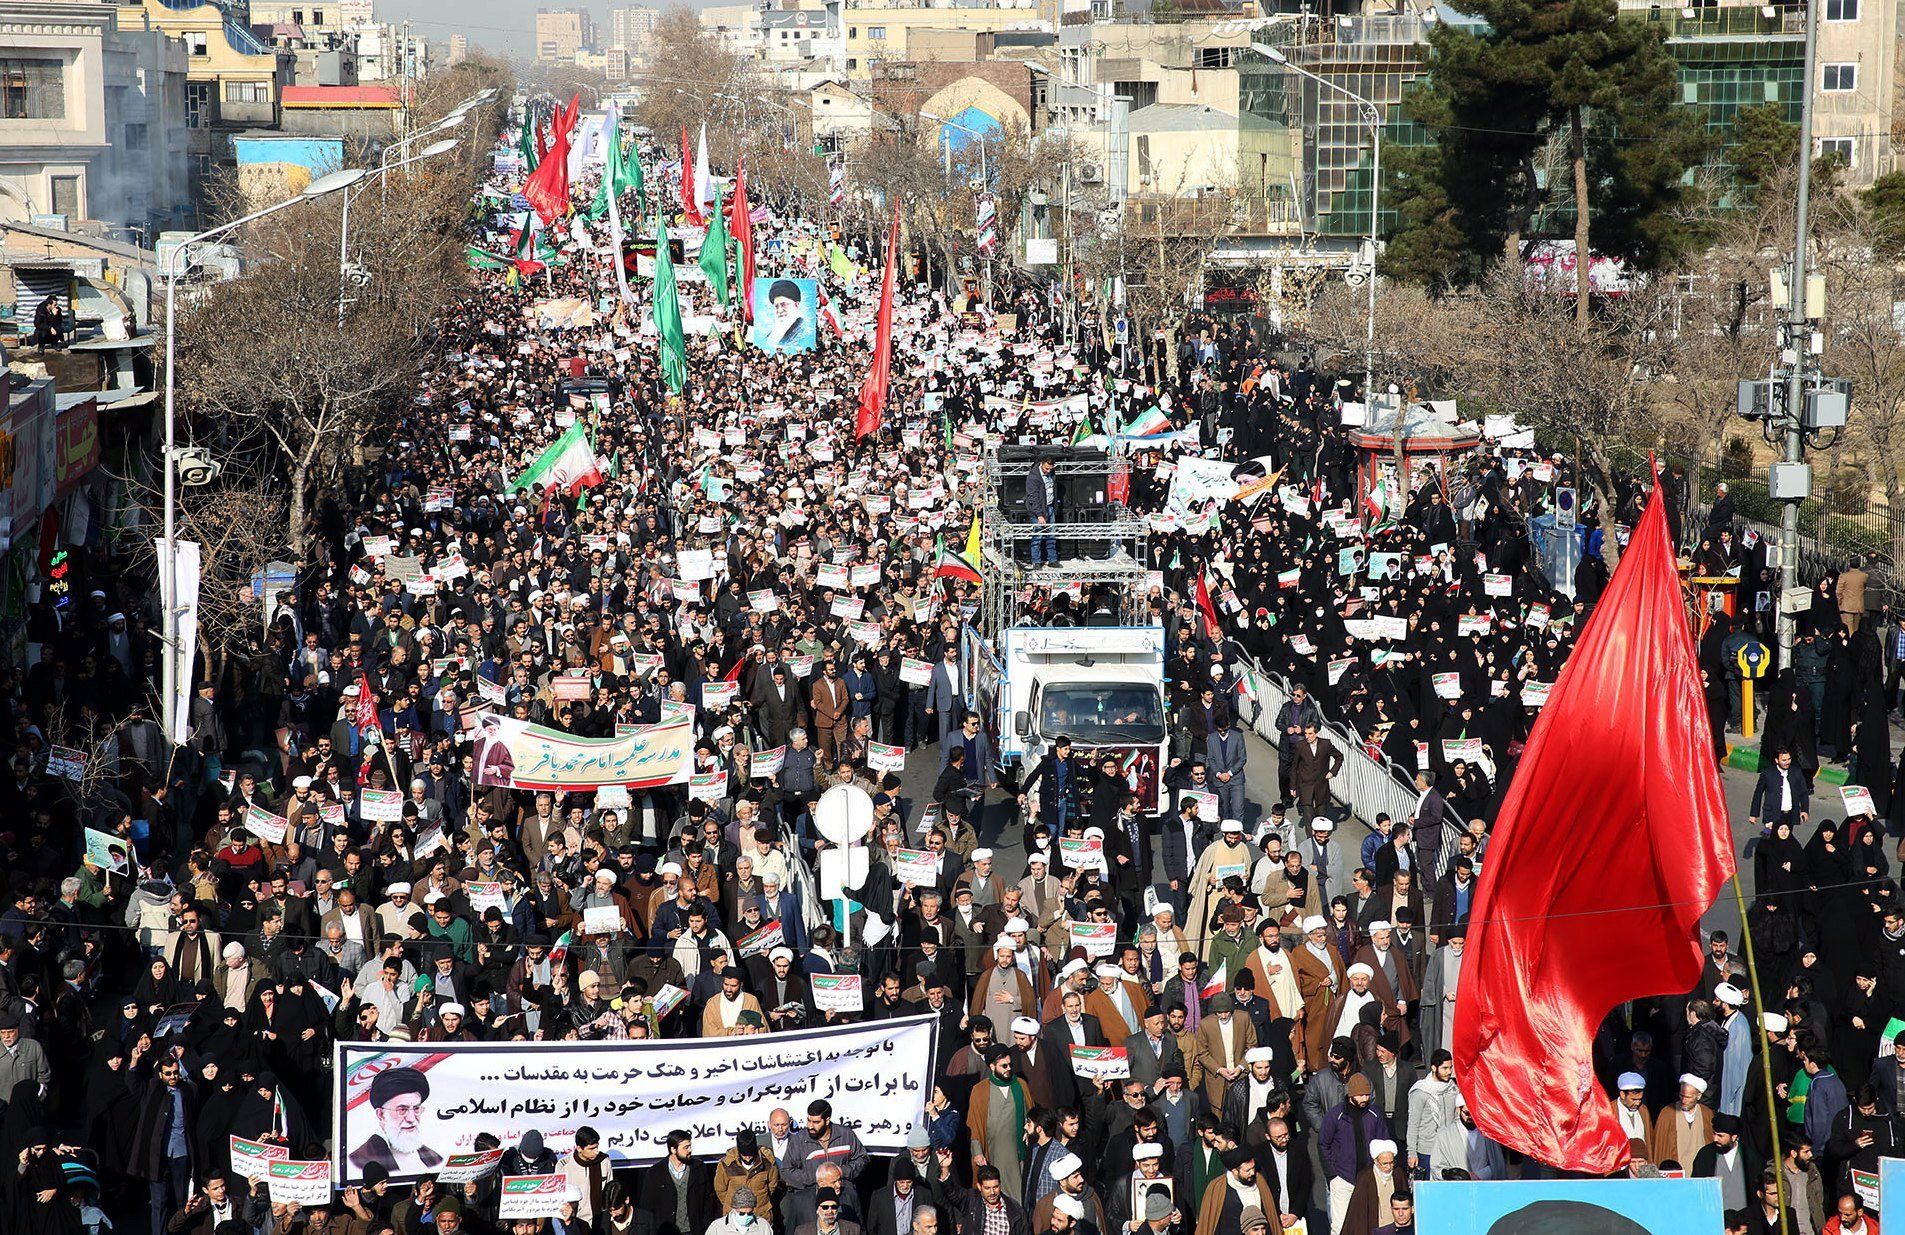 Kormánypárti tüntetés az iráni Meshedben 2018. január 4-én. A tüntetők Ali Hamenei ajatolláh és a síita klérus által felügyelt kormány iránti támogatásukat fejezték ki, miután az előző napokban kormányellenes tiltakozások voltak több iráni városban. (MTI/EPA/Nima Nadzsaf Zadeh)